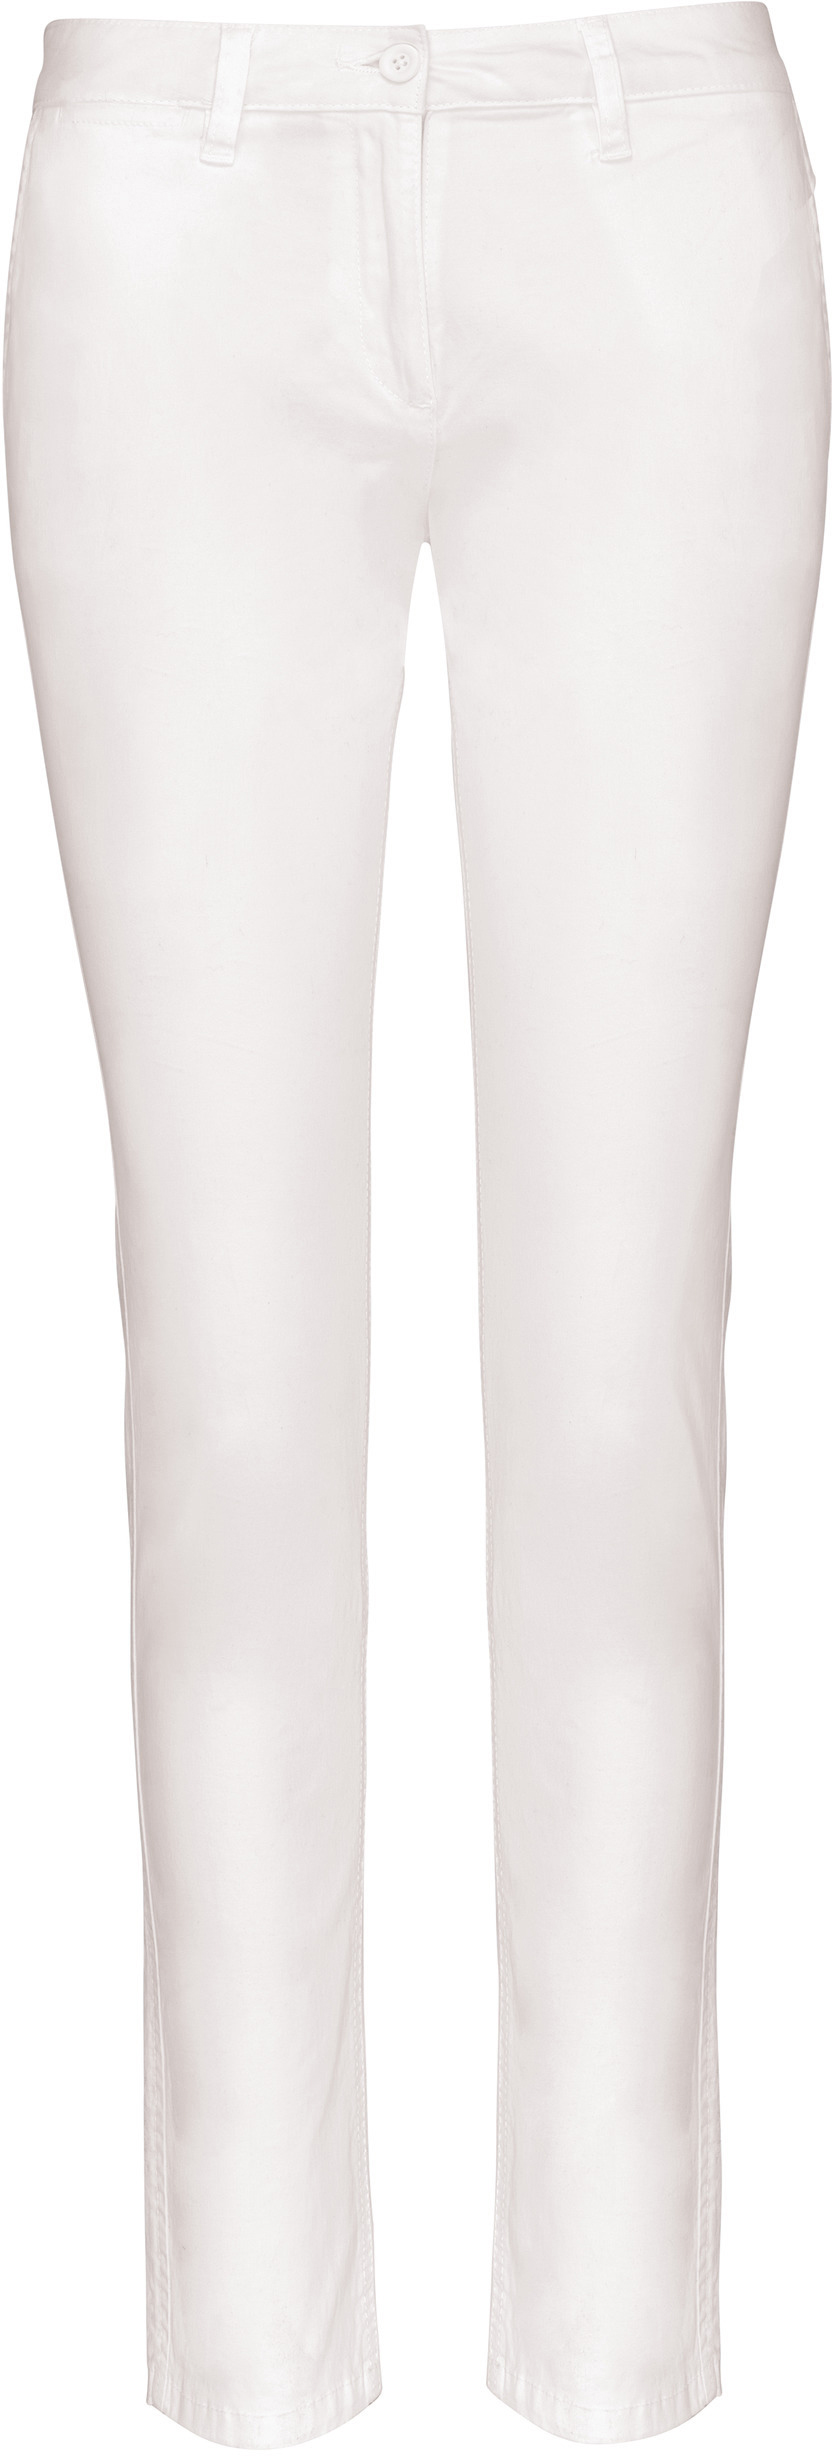 Dámské kalhoty CHINO K741 Barva: bílá, Velikost: 44